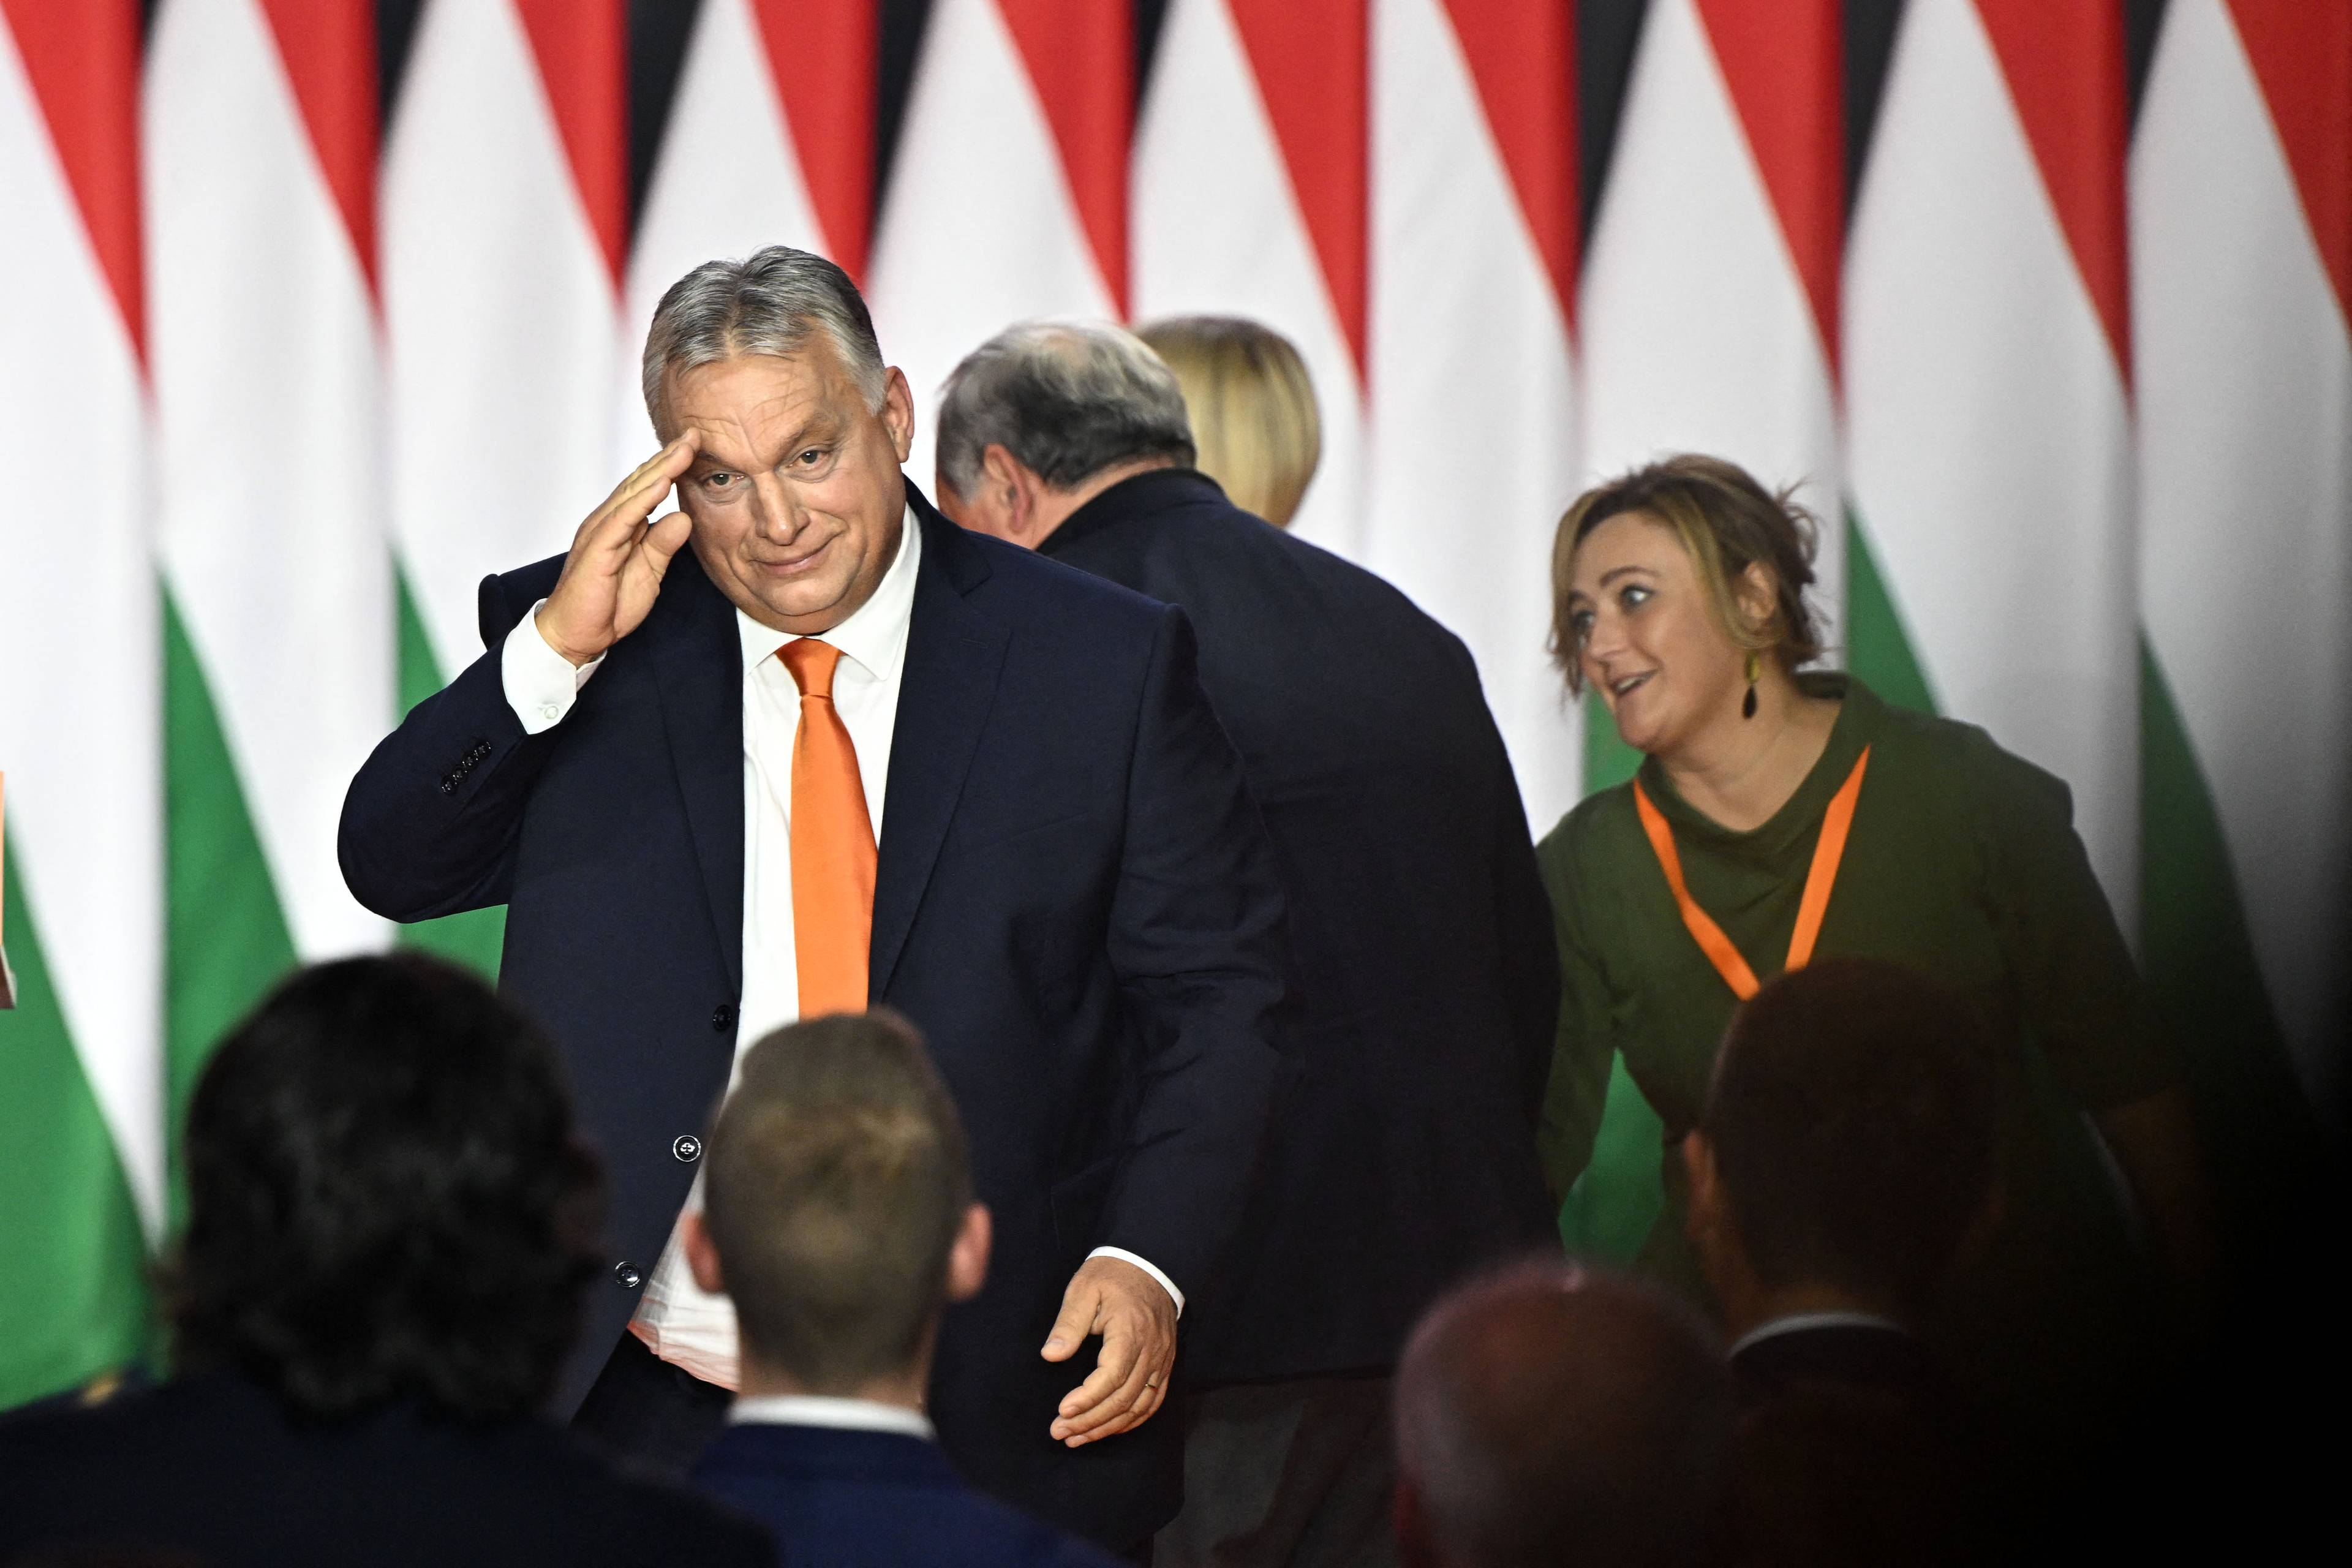 60-latek z lekką nadwagą (Viktor Orbán) podnosi rękę do czoła w geście przypominającym salut. W tle trzy inne osoby i flagi Węgier